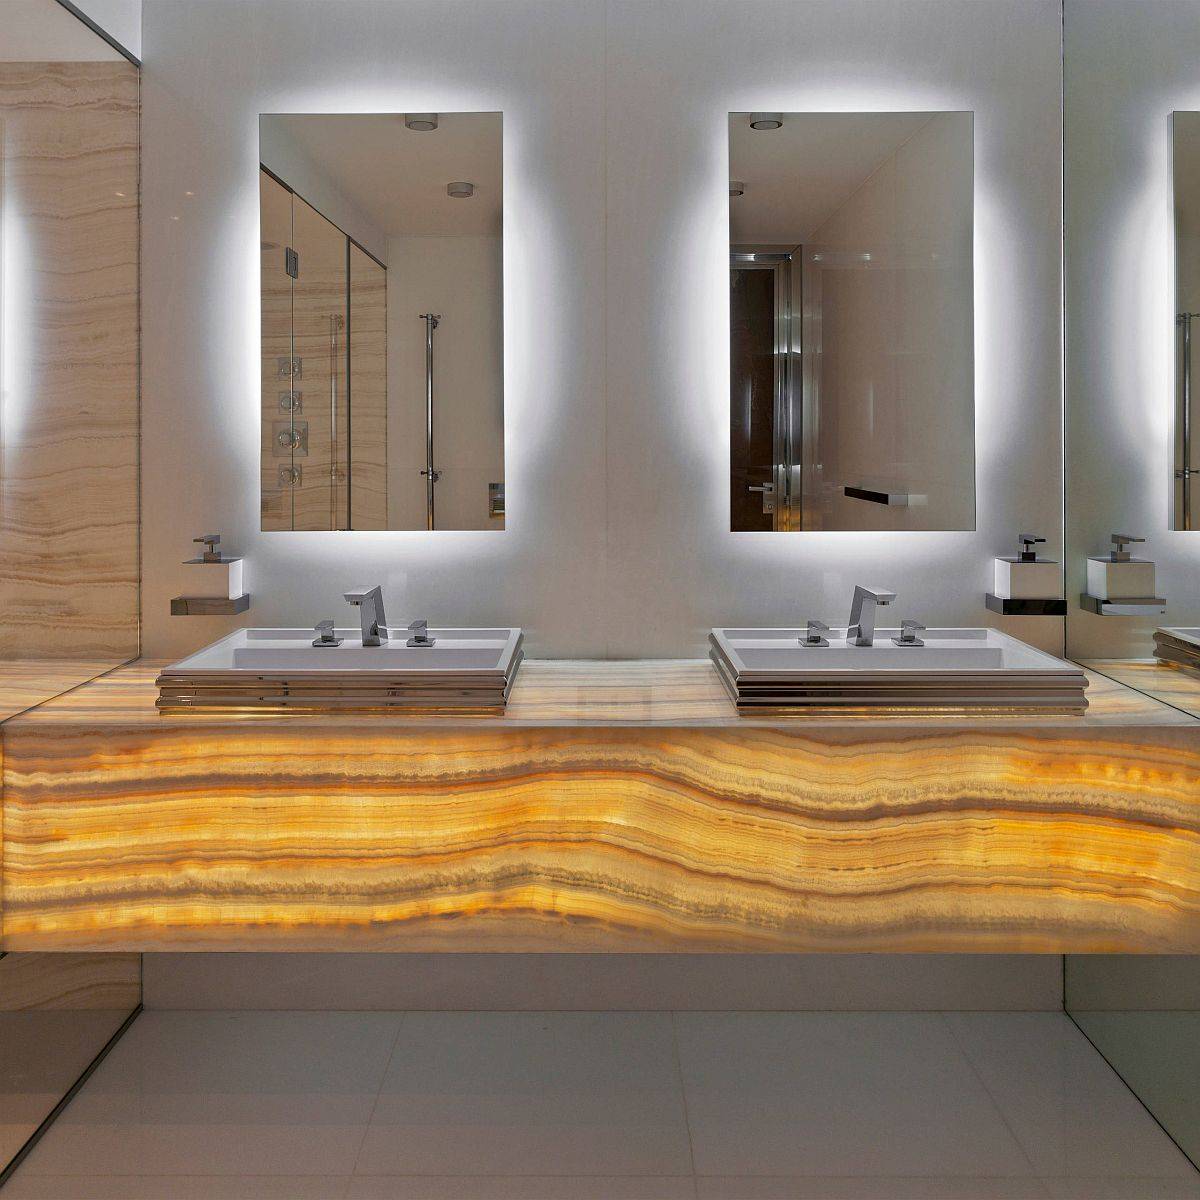 Phòng tắm sang trọng với gương và mặt bàn làm từ đá mã não xuyên sáng độc đáo.